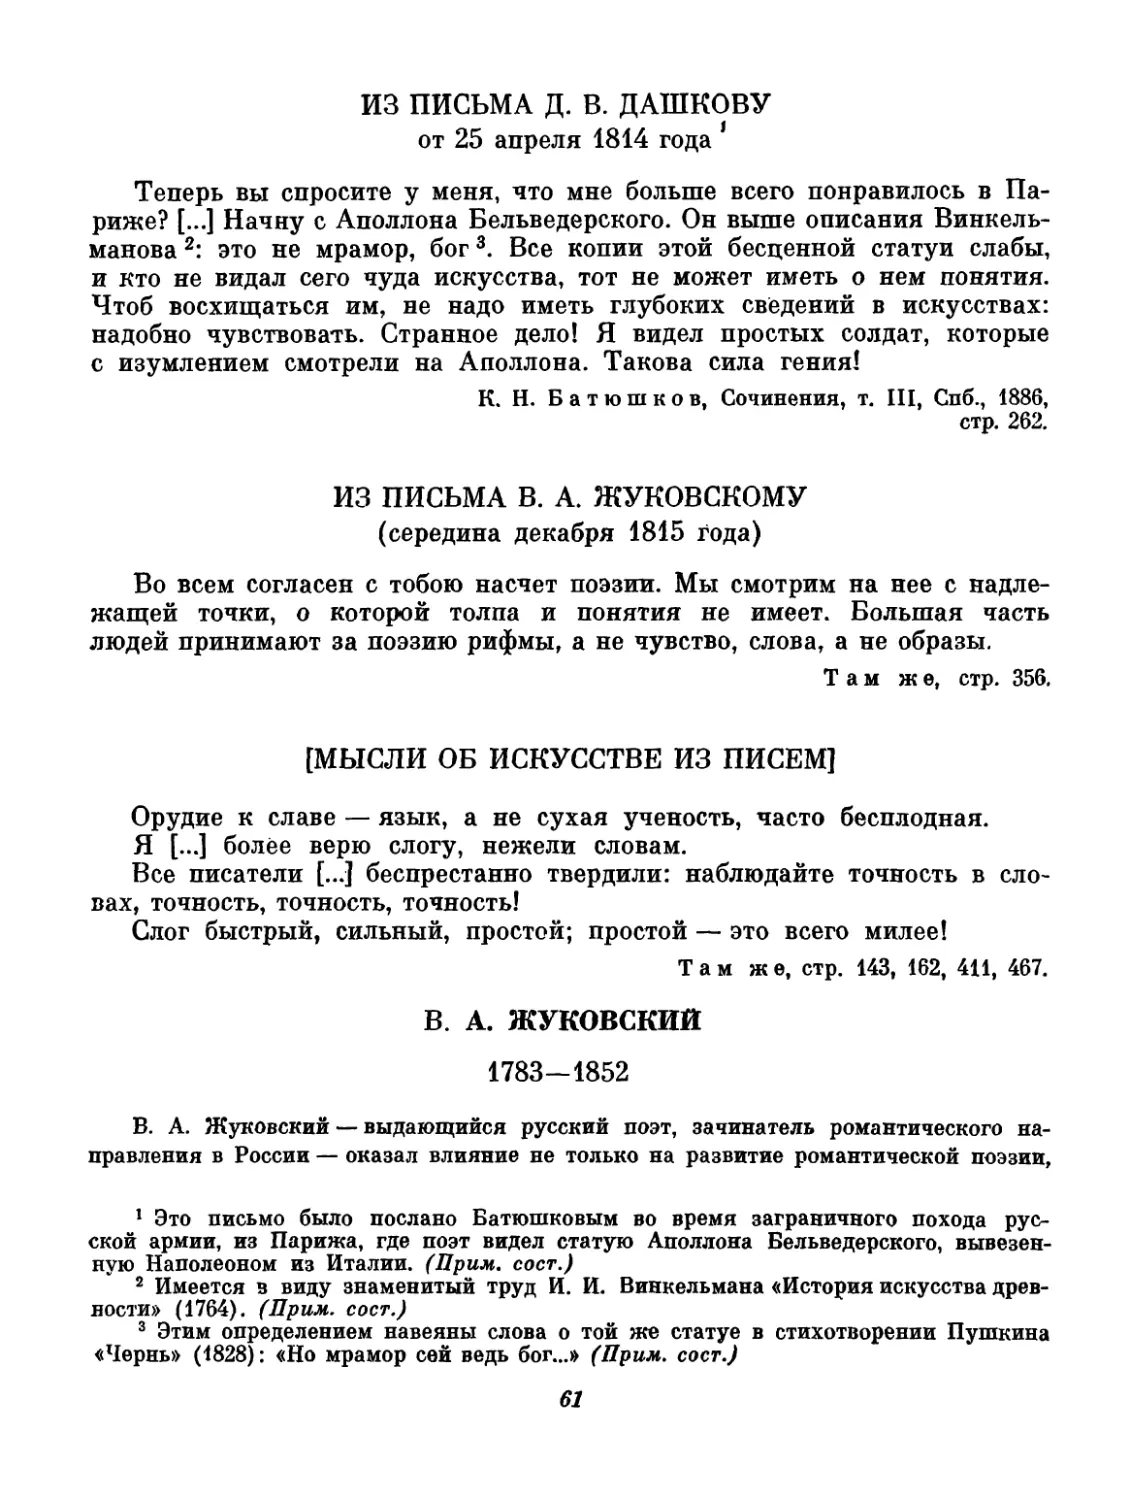 Жуковский. Вступительный текст и составление Р. В. Иезуитовой